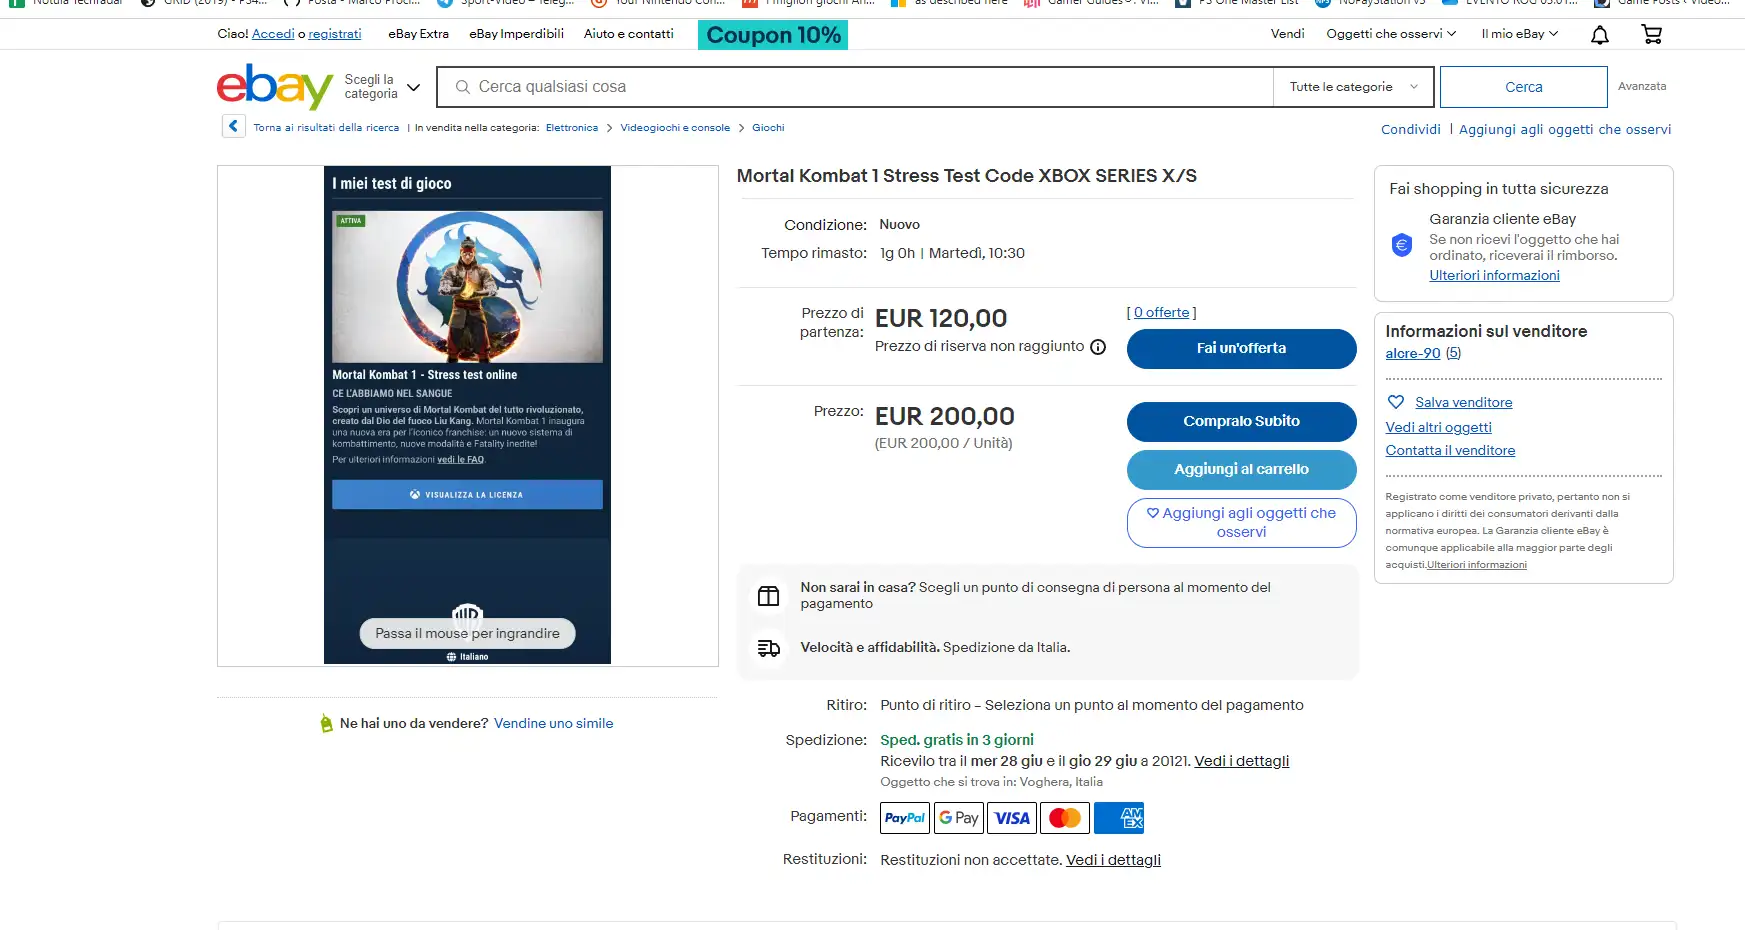 Mortal Kombat 1 Online Stress Test, bagarinaggio sui codici: prezzi fino a 1000 dollari